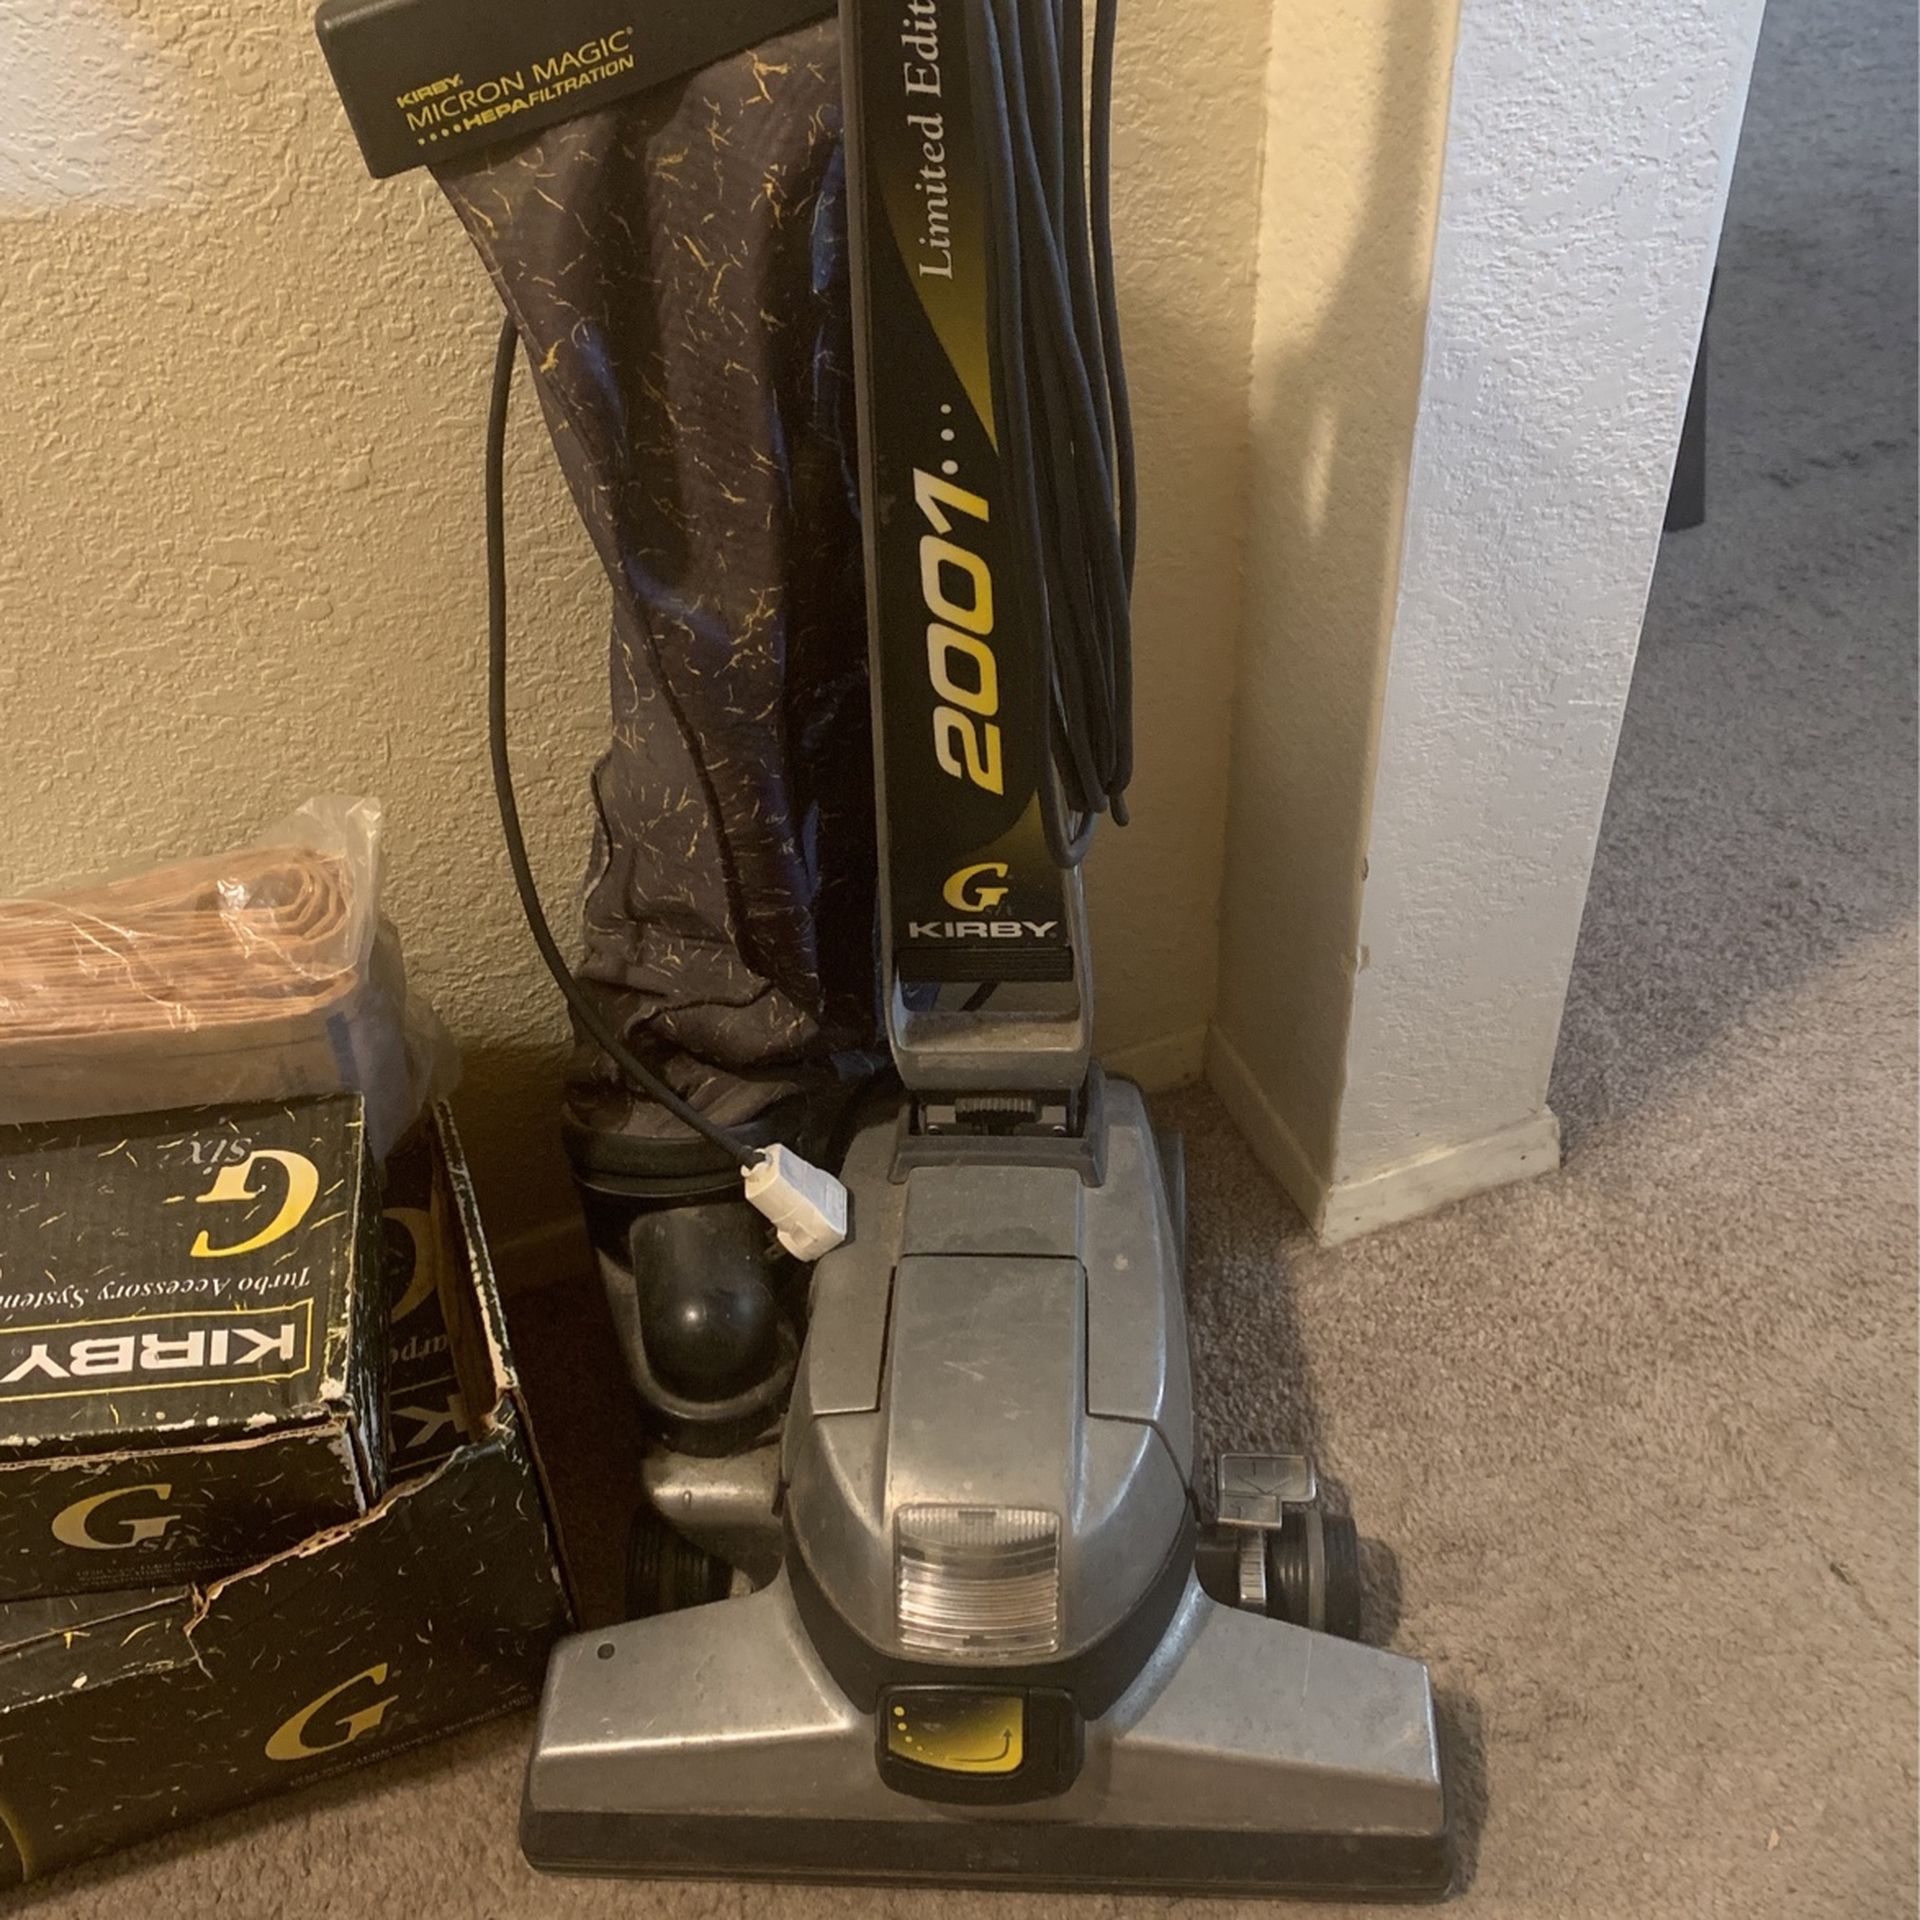 KIRBY G 2001 Vacuum 